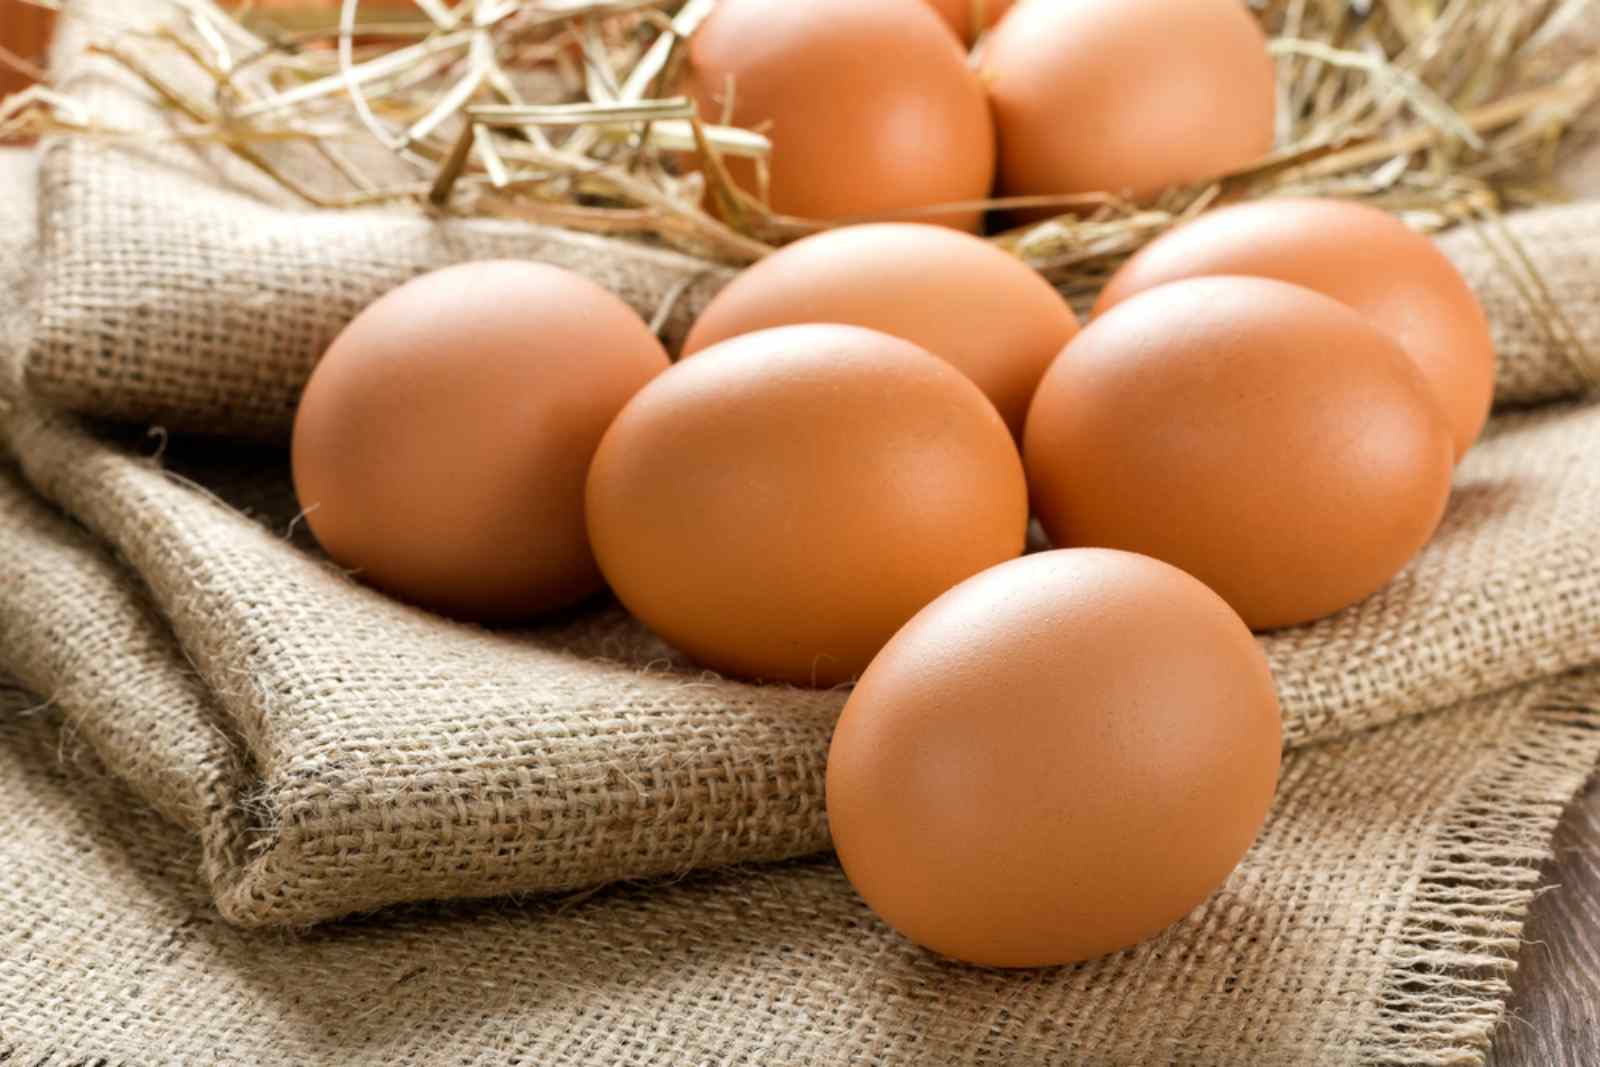 Trứng gà chứa hàm lượng dinh dưỡng cao